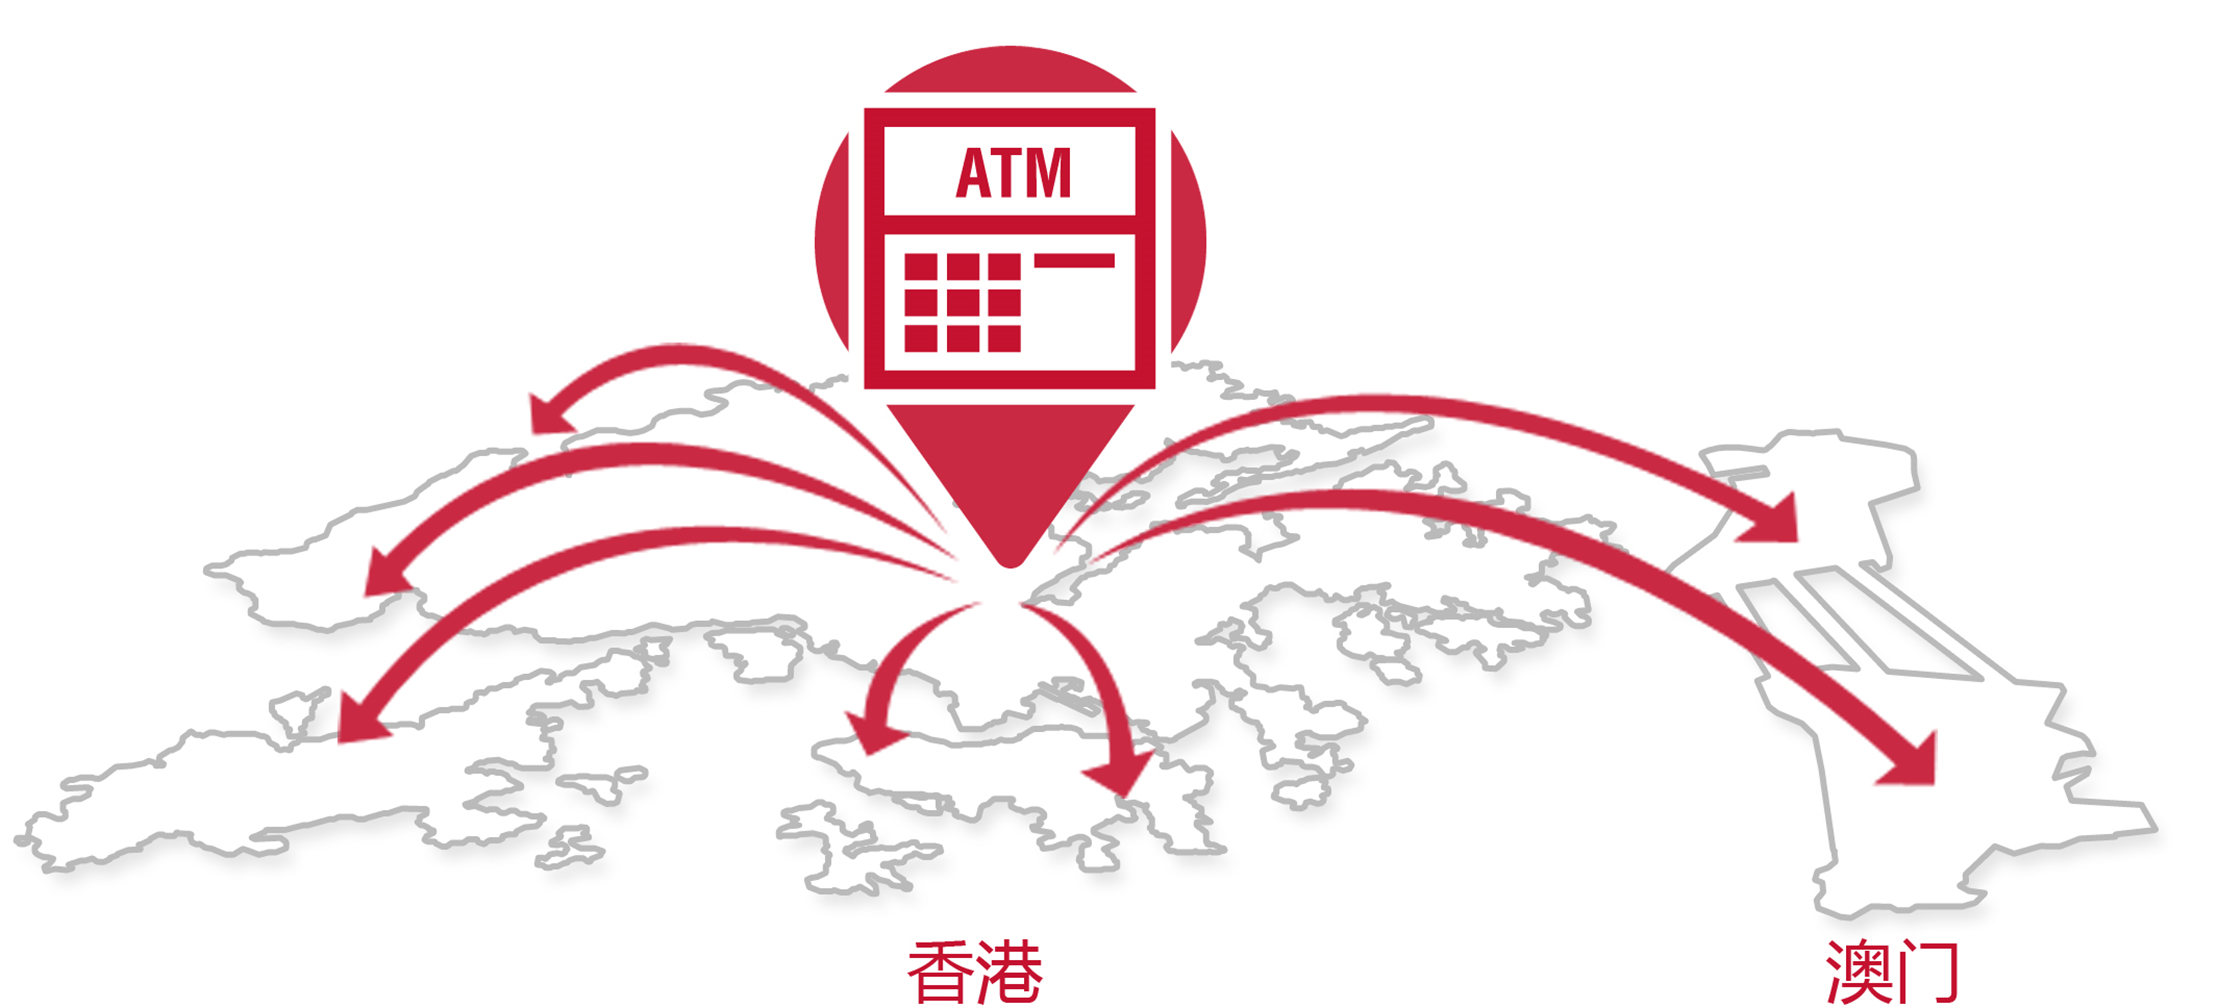 ATM-Map-SC.jpg